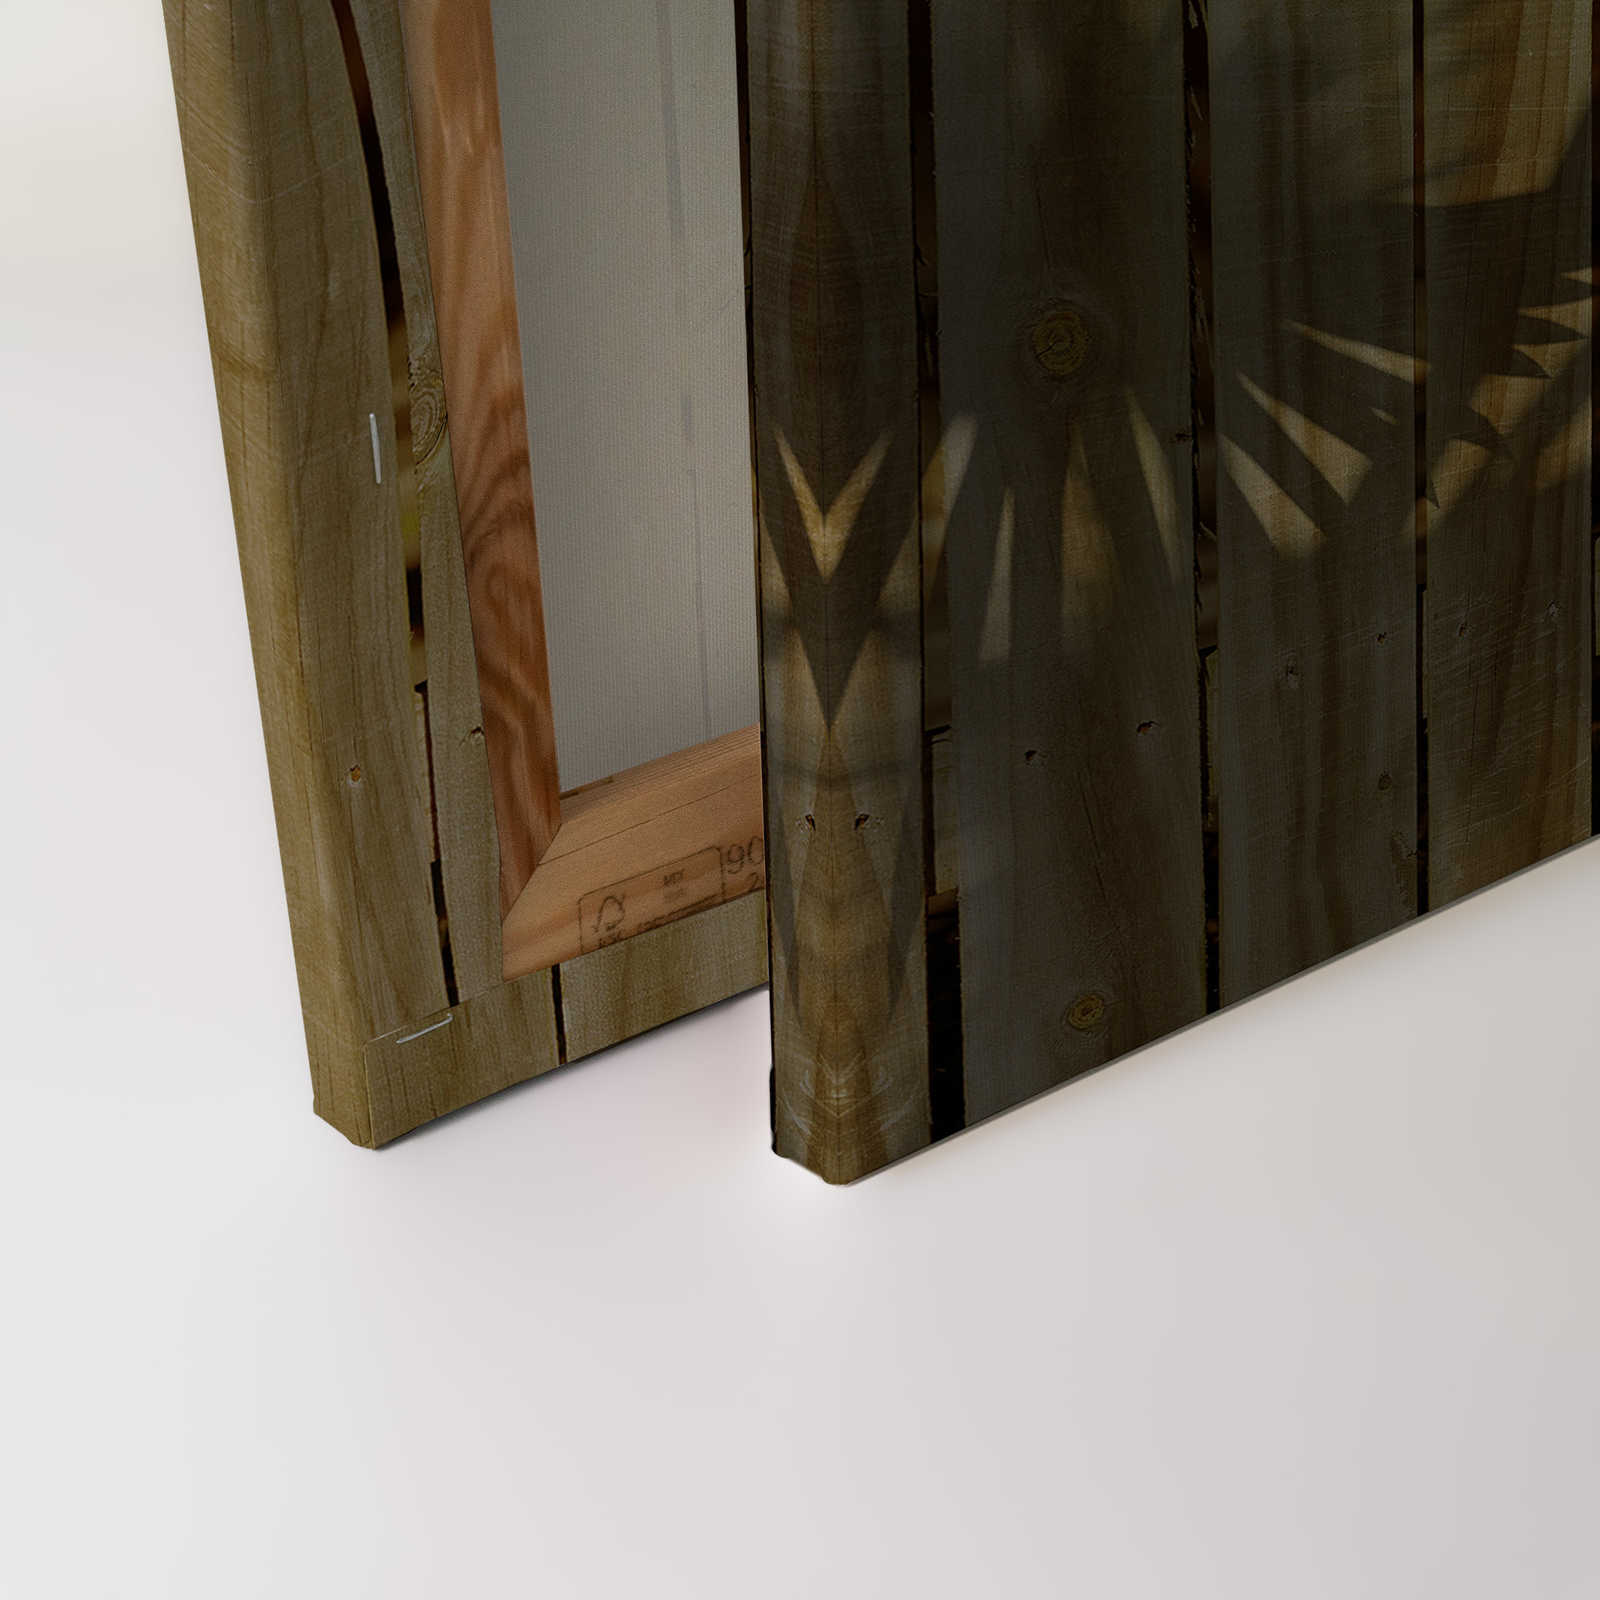             Toile imitation bois et ombre de feuille de palmier - 0,90 m x 0,60 m
        